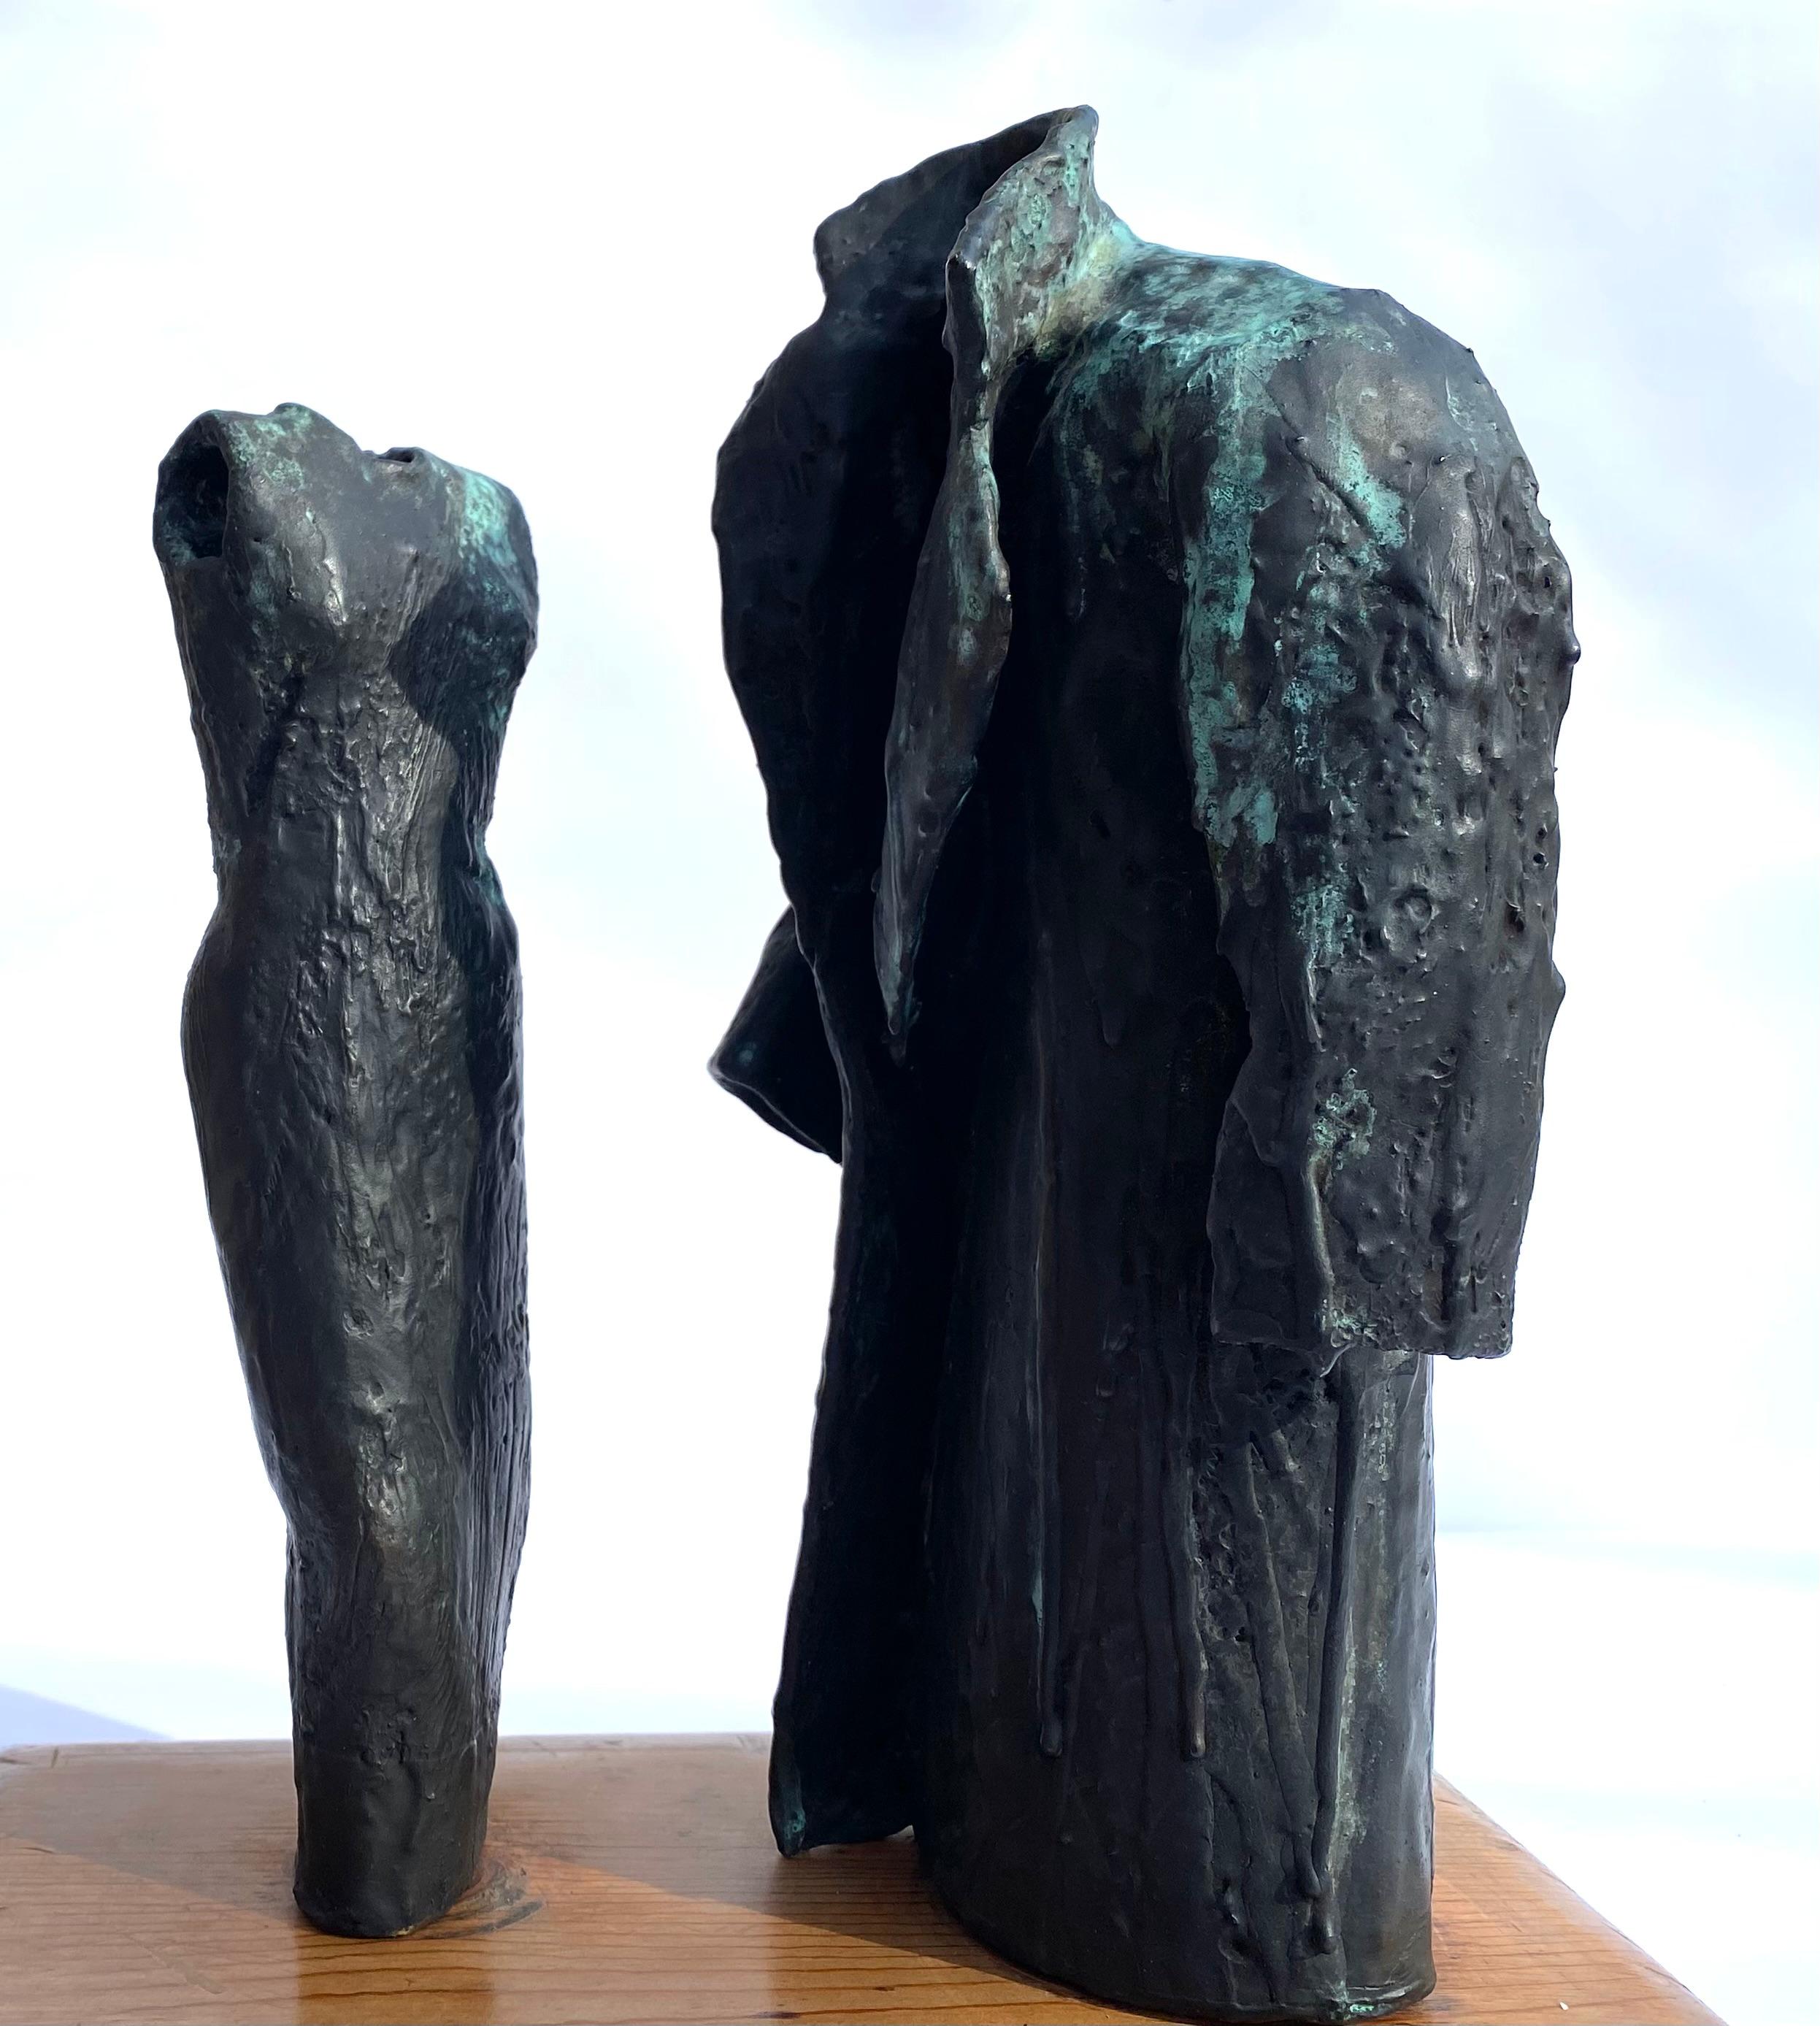 Original handgegossene Bronze-Doppelfigur eines männlichen und eines weiblichen Torsos in hohlem Gewand, die Adam und Eva im Garten Eden darstellen.  Die Bronzeskulptur wird der amerikanischen Bildhauerin Judith Shea zugeschrieben. Bei diesem Werk